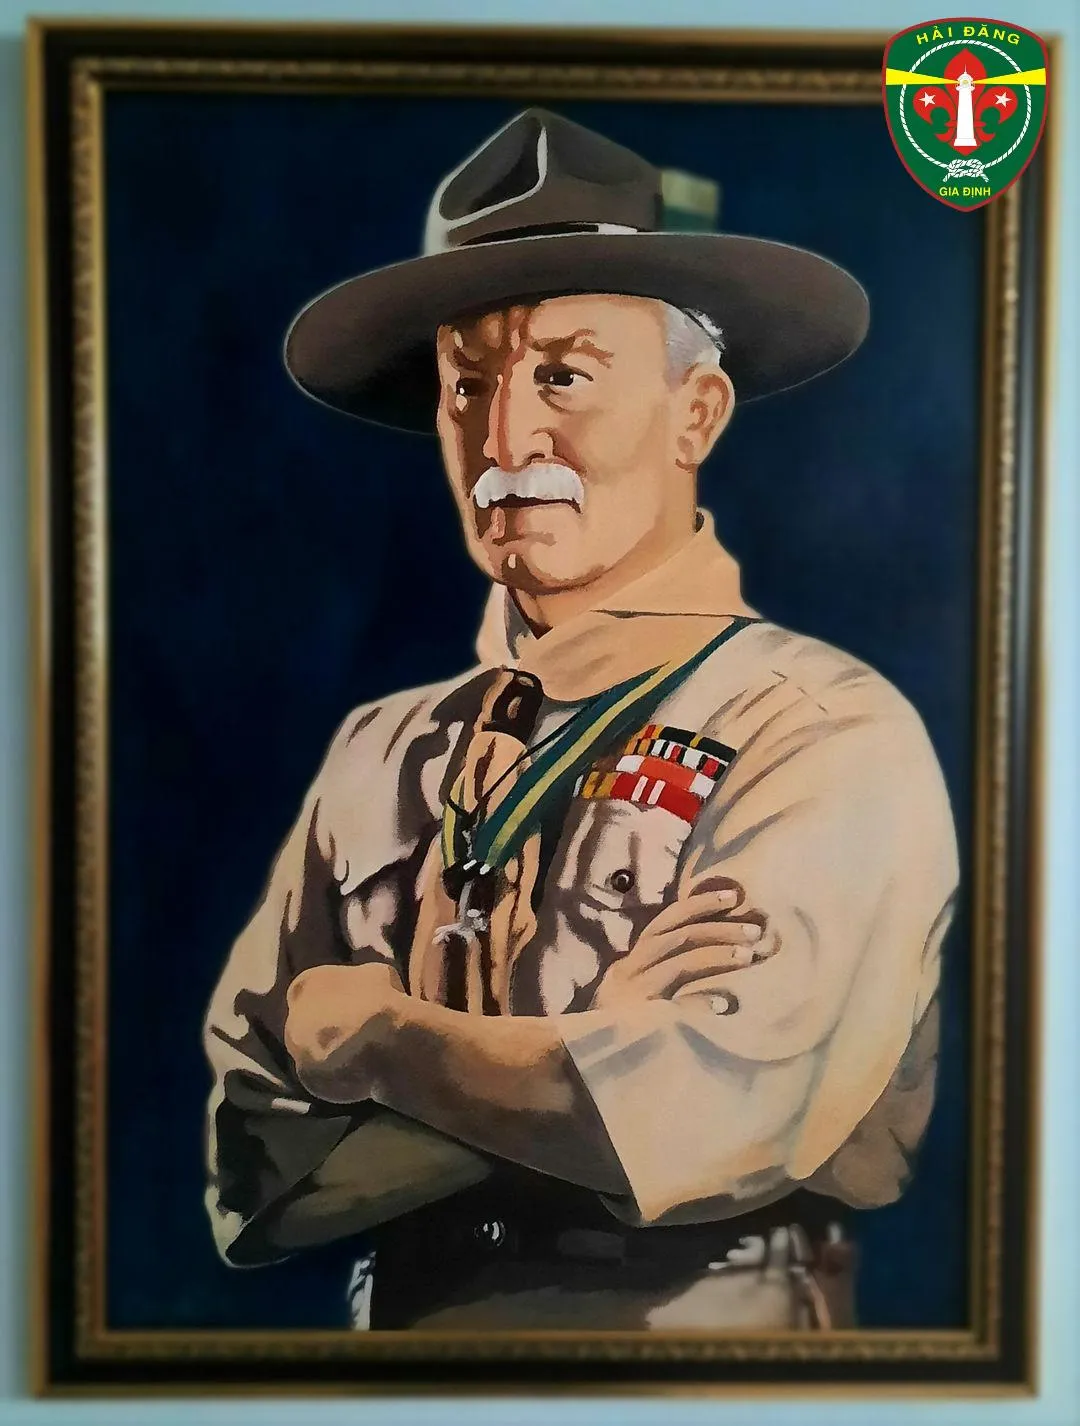 (Chân dung của ngài Baden Powell do Trưởng Hồ Đăng Trần Sung vẽ lại trong năm 2021)